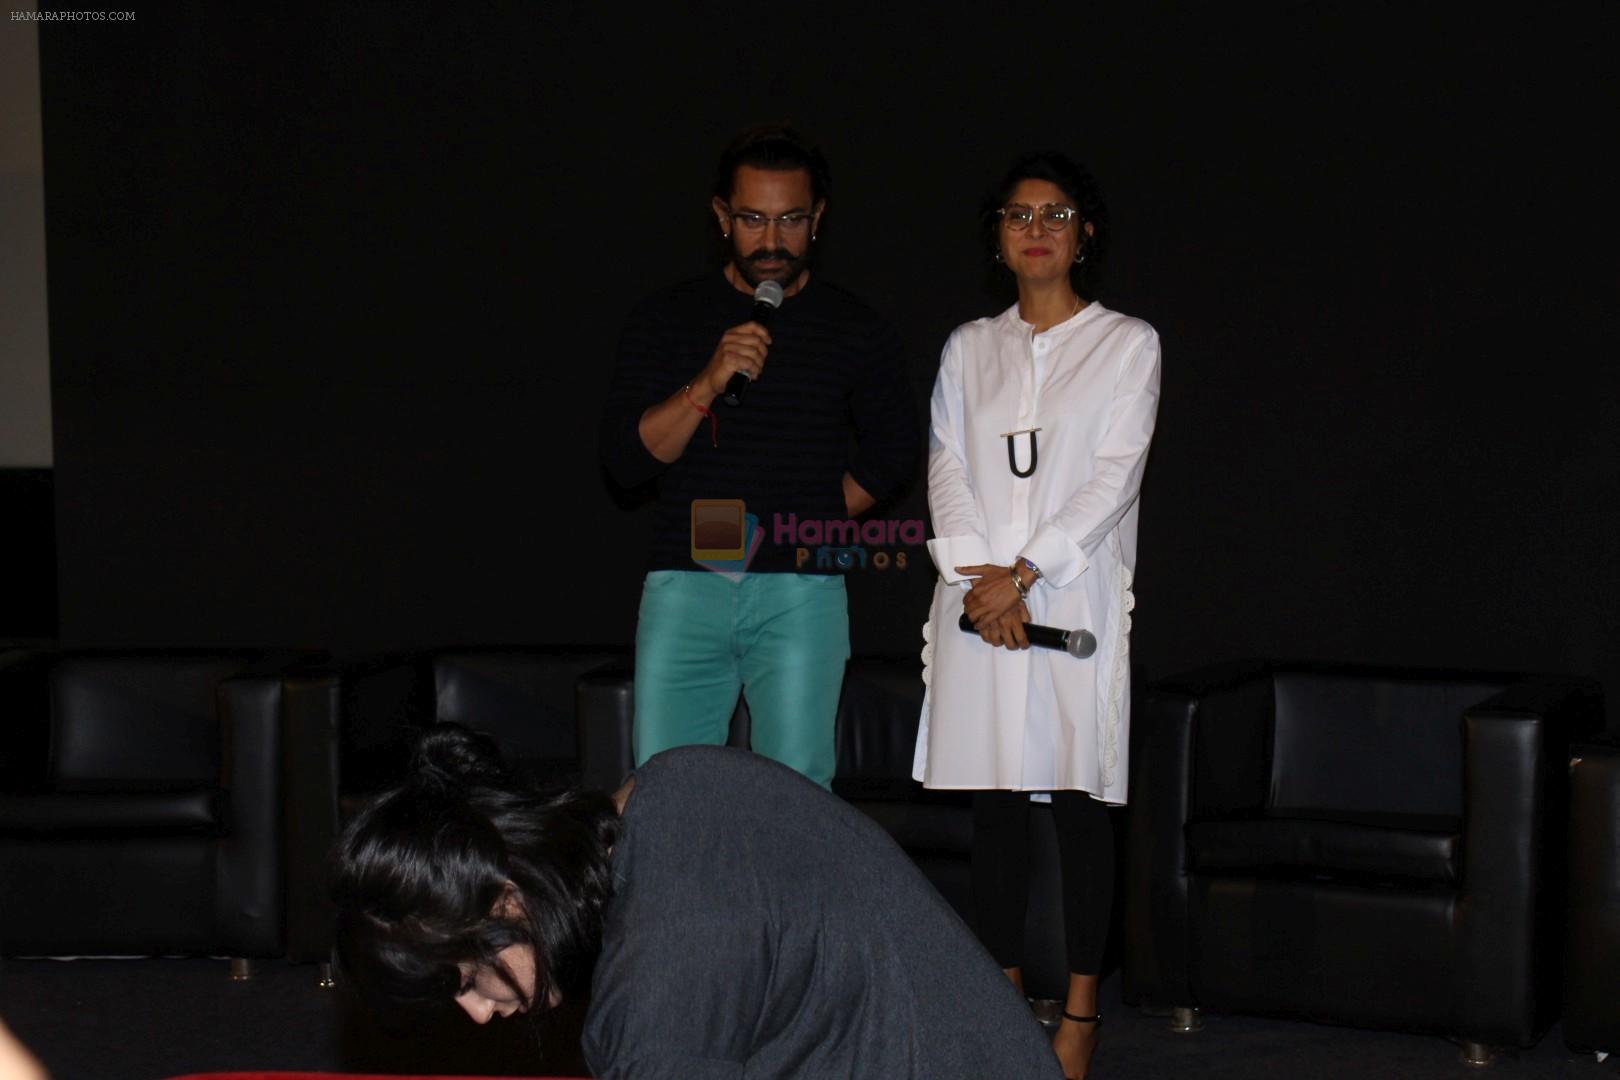 Aamir Khan, Kiran Rao at Trailer Launch Of Film Secret Superstar on 2nd Aug 2017